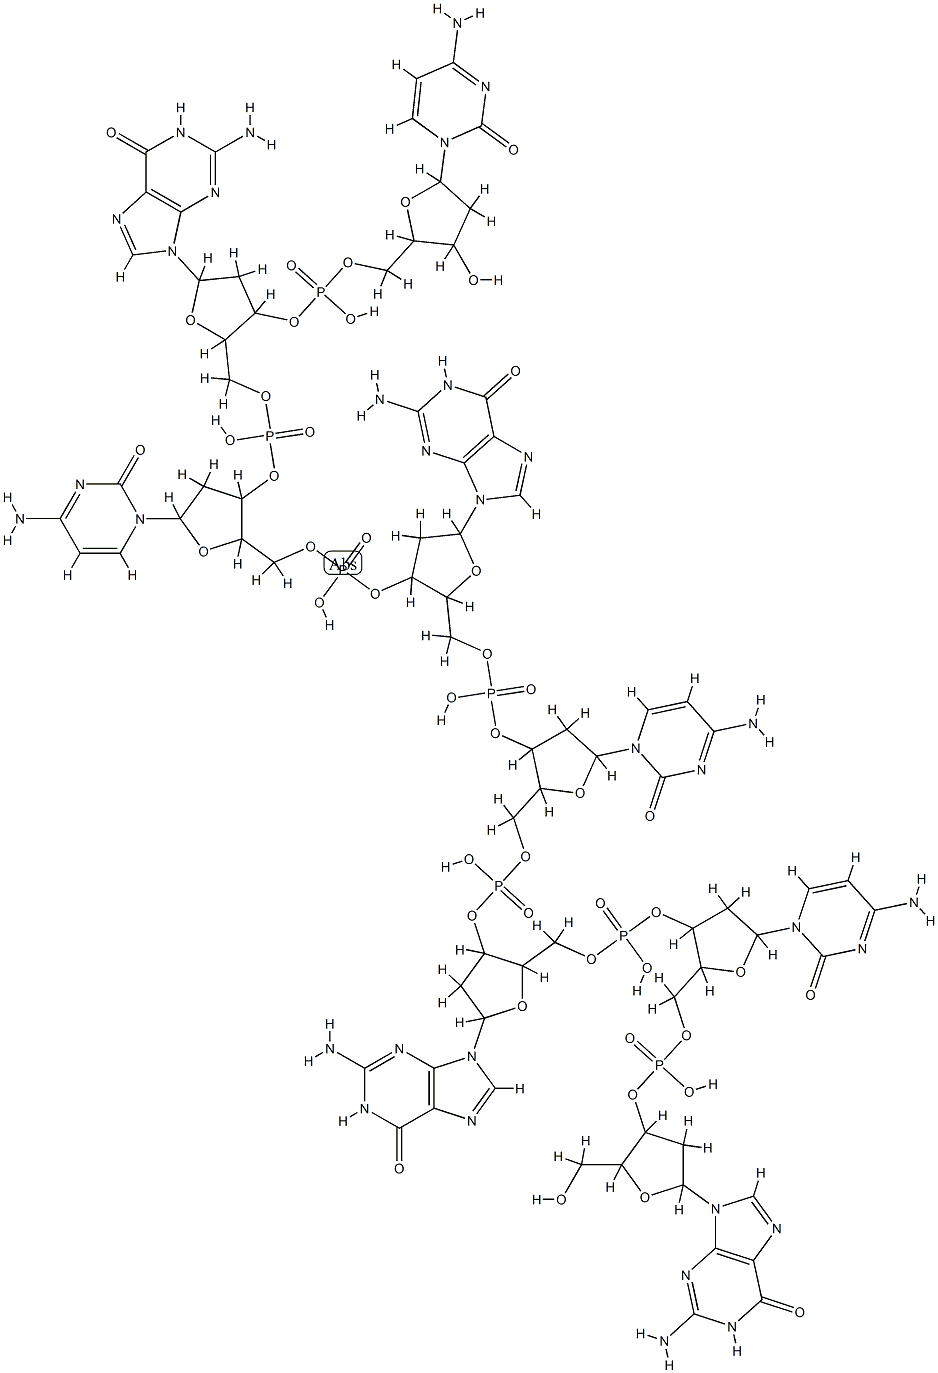 oligo(dG-dC) Structure